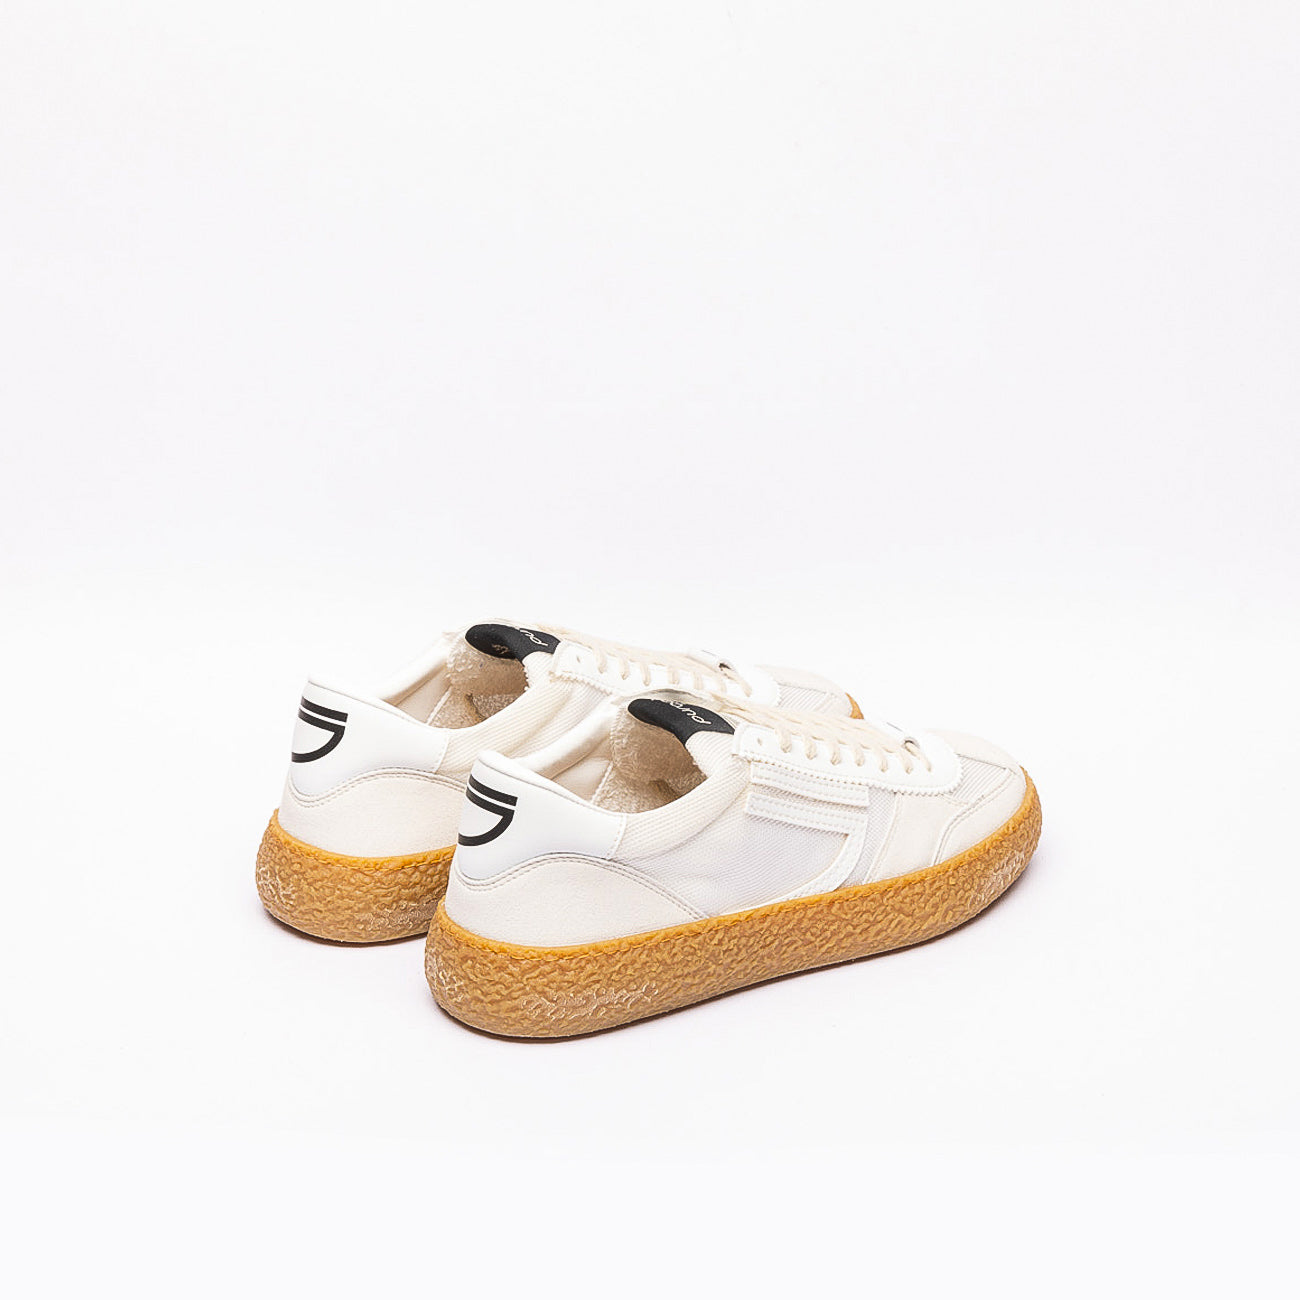 Sneaker Puraai 1.01 Vintage Vaniglia in tessuto e camoscio bianco